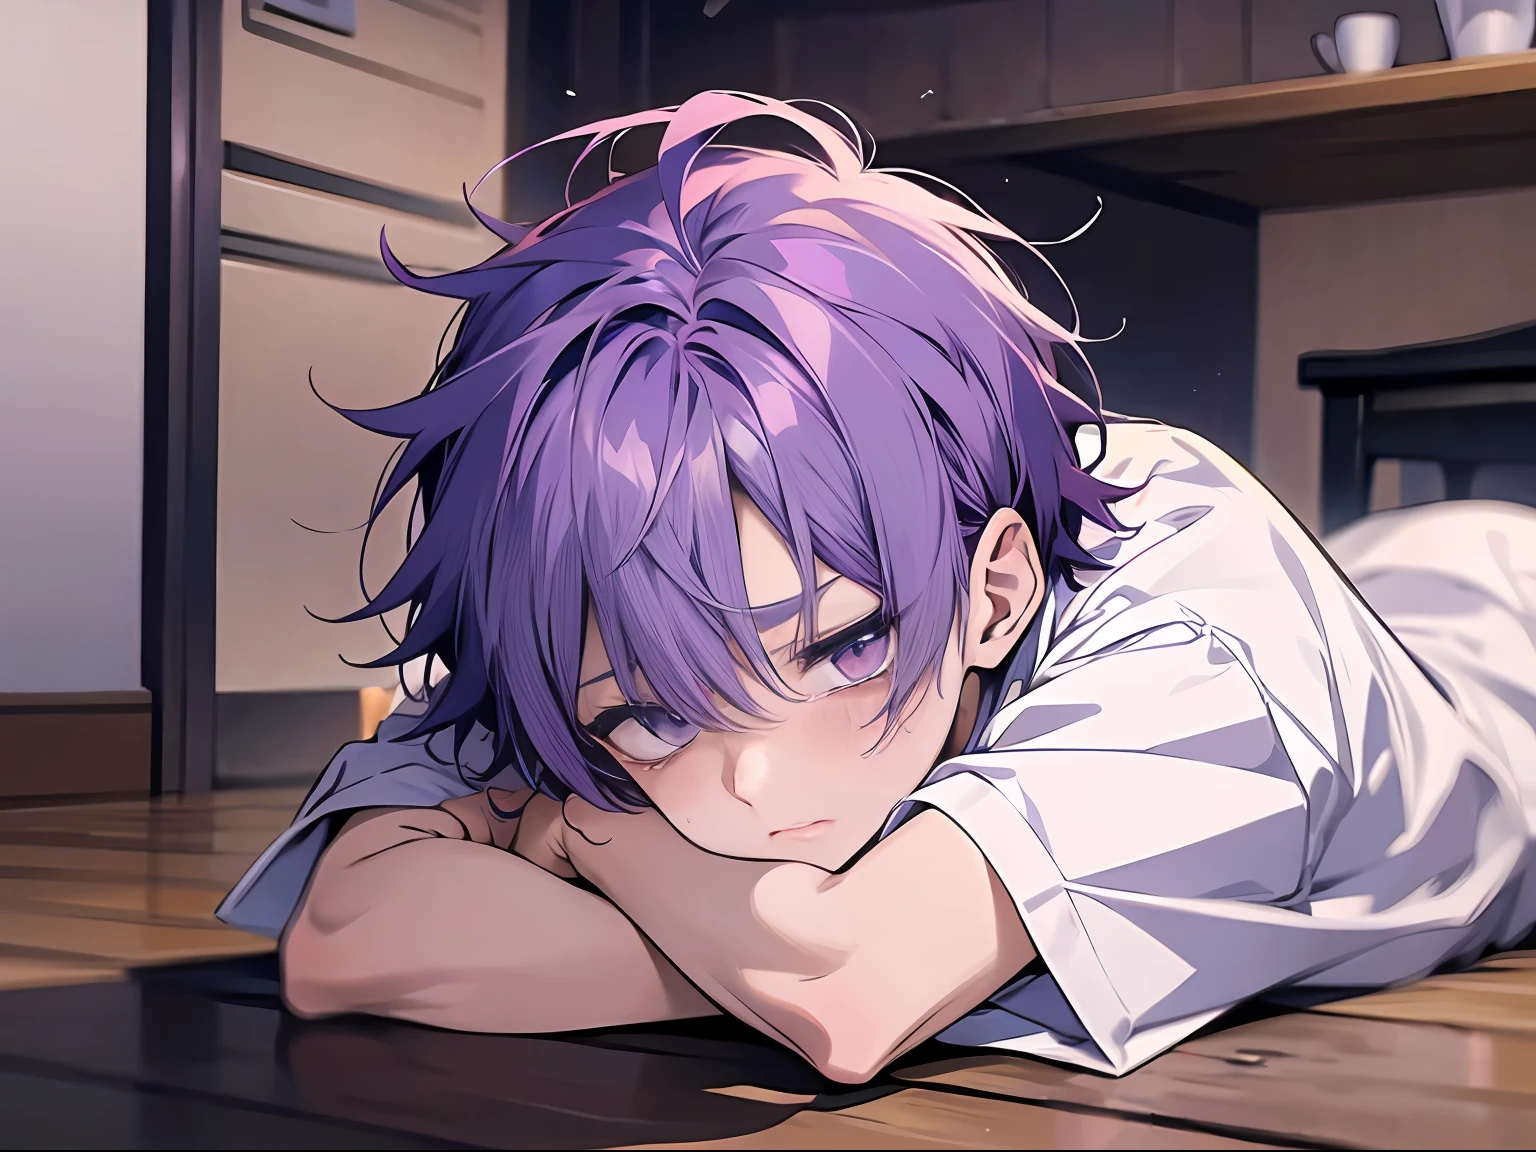 (アニメ風+柔らかいかわいい)男 、紫色の髪、白のシャツ、悲しむ+嗚咽する、